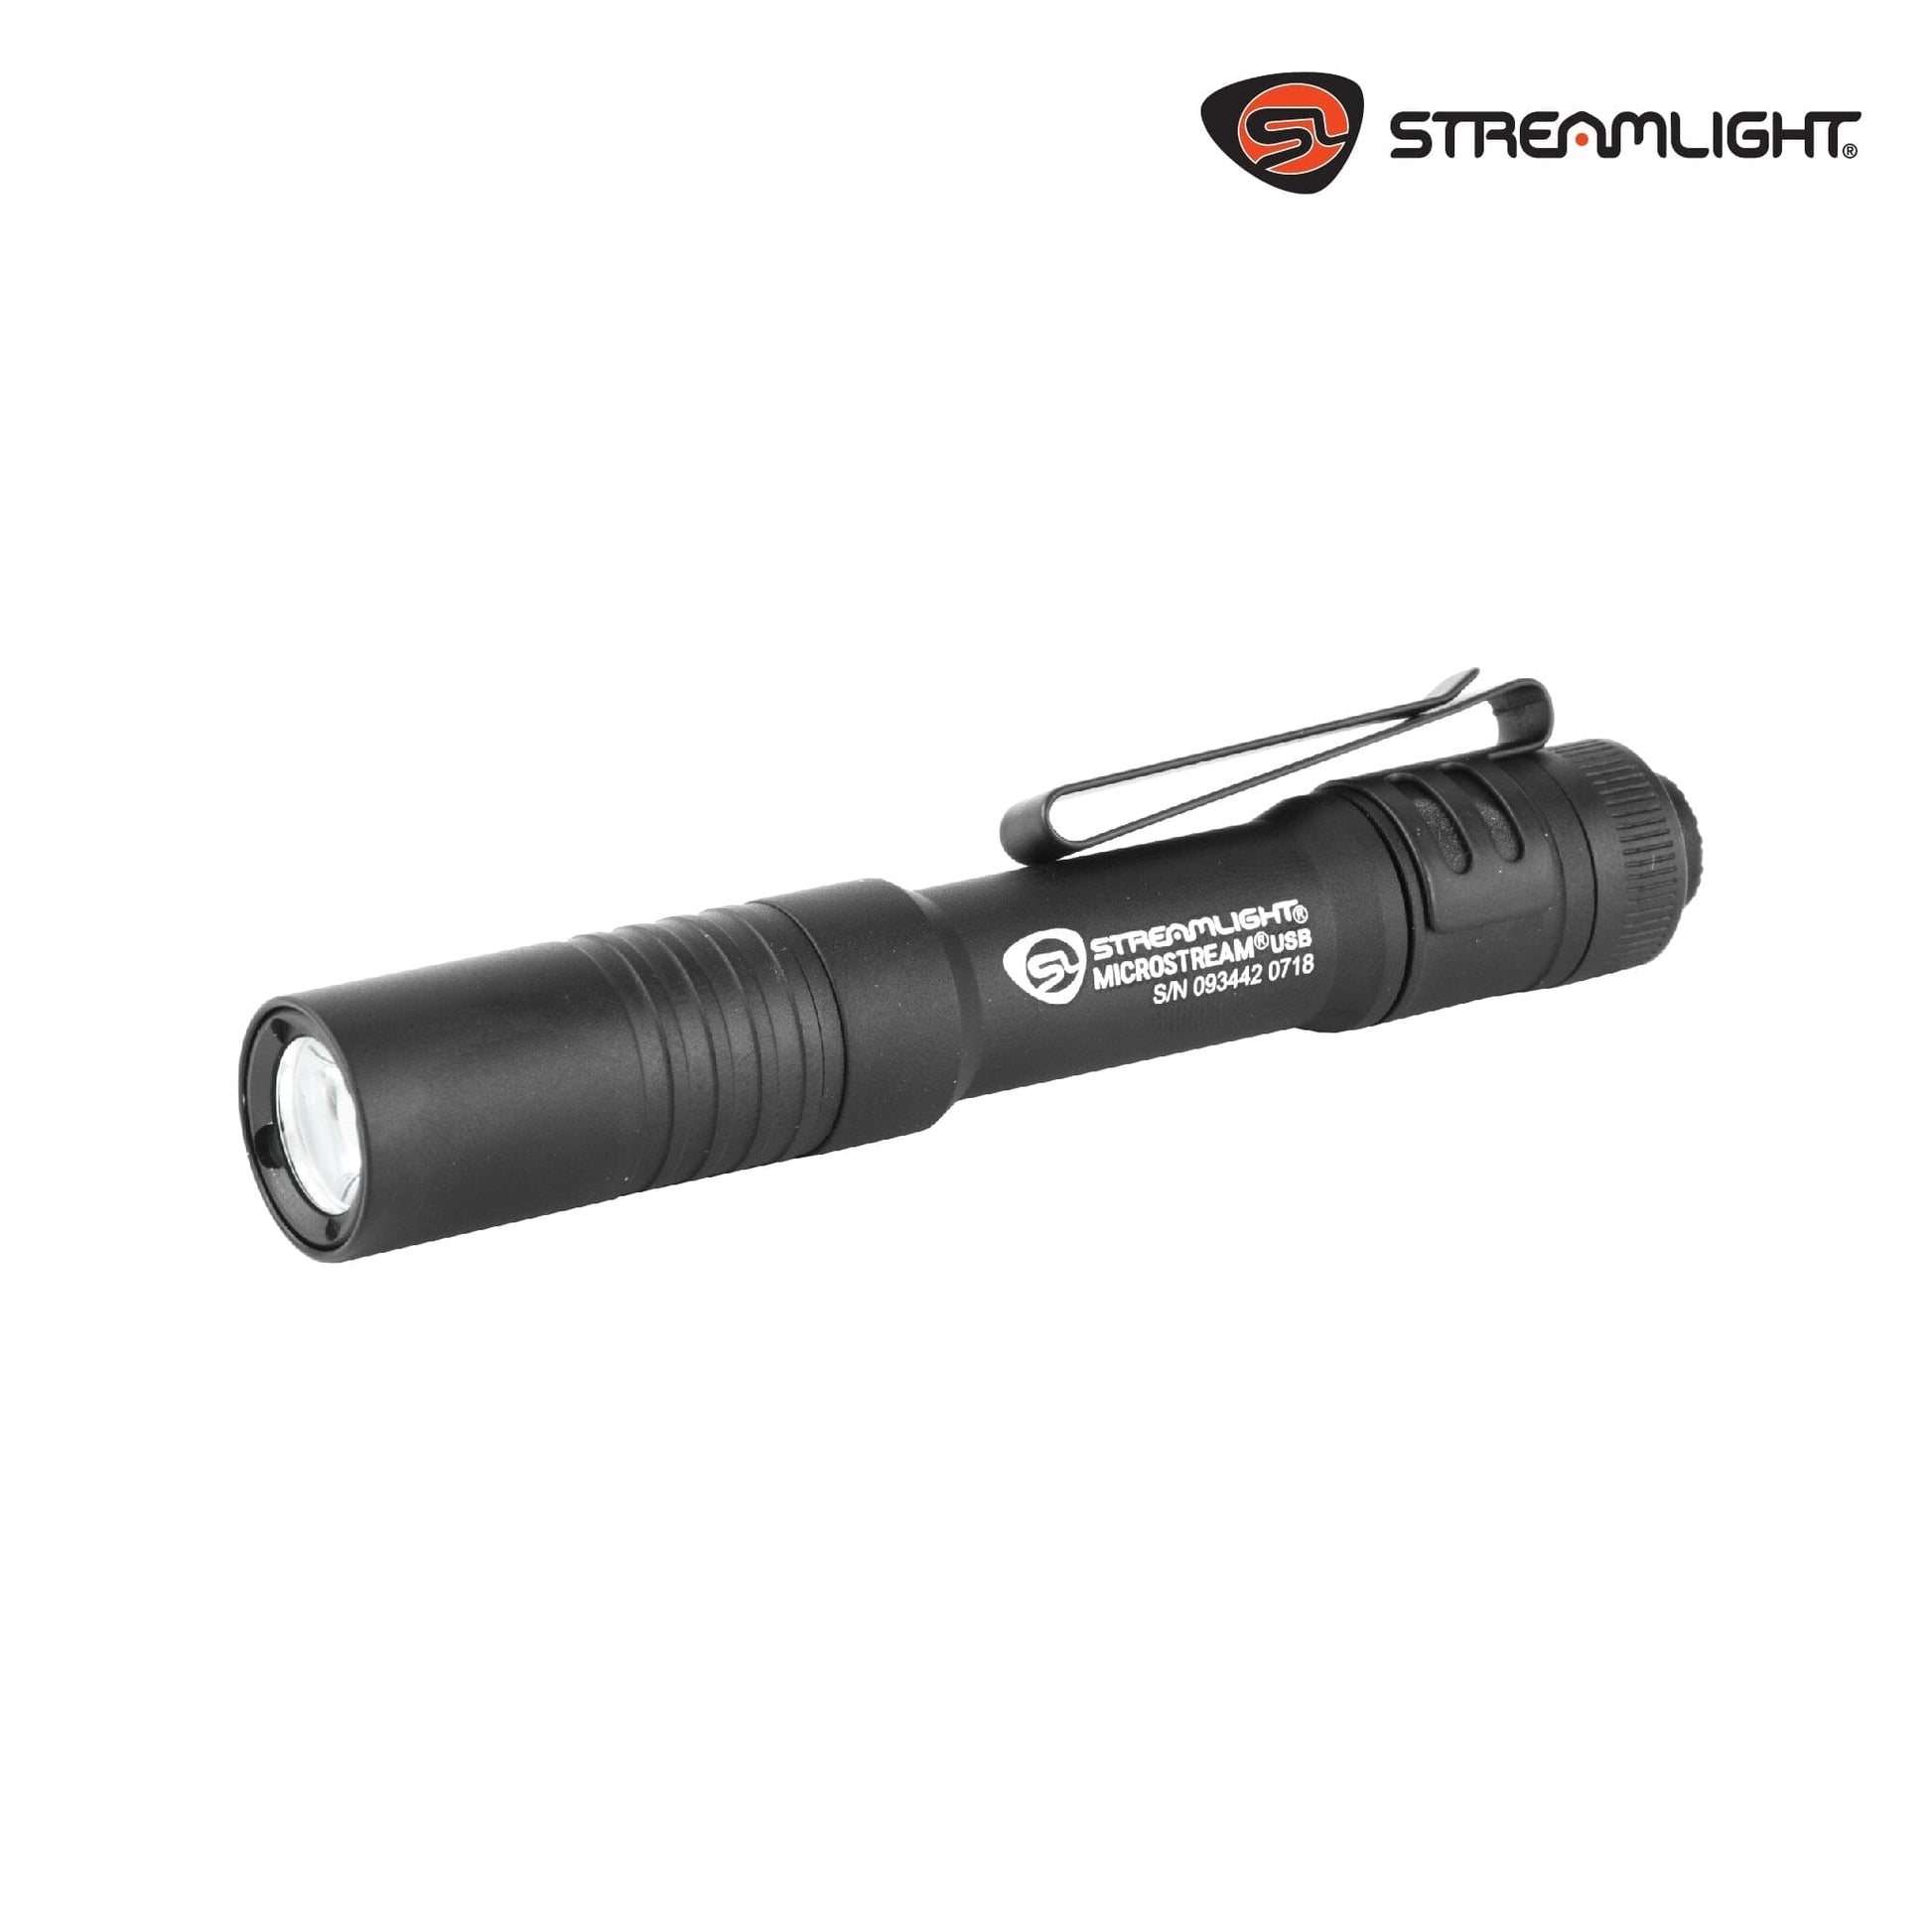 Streamlight MicroStream Flashlight Flashlight Streamlight 